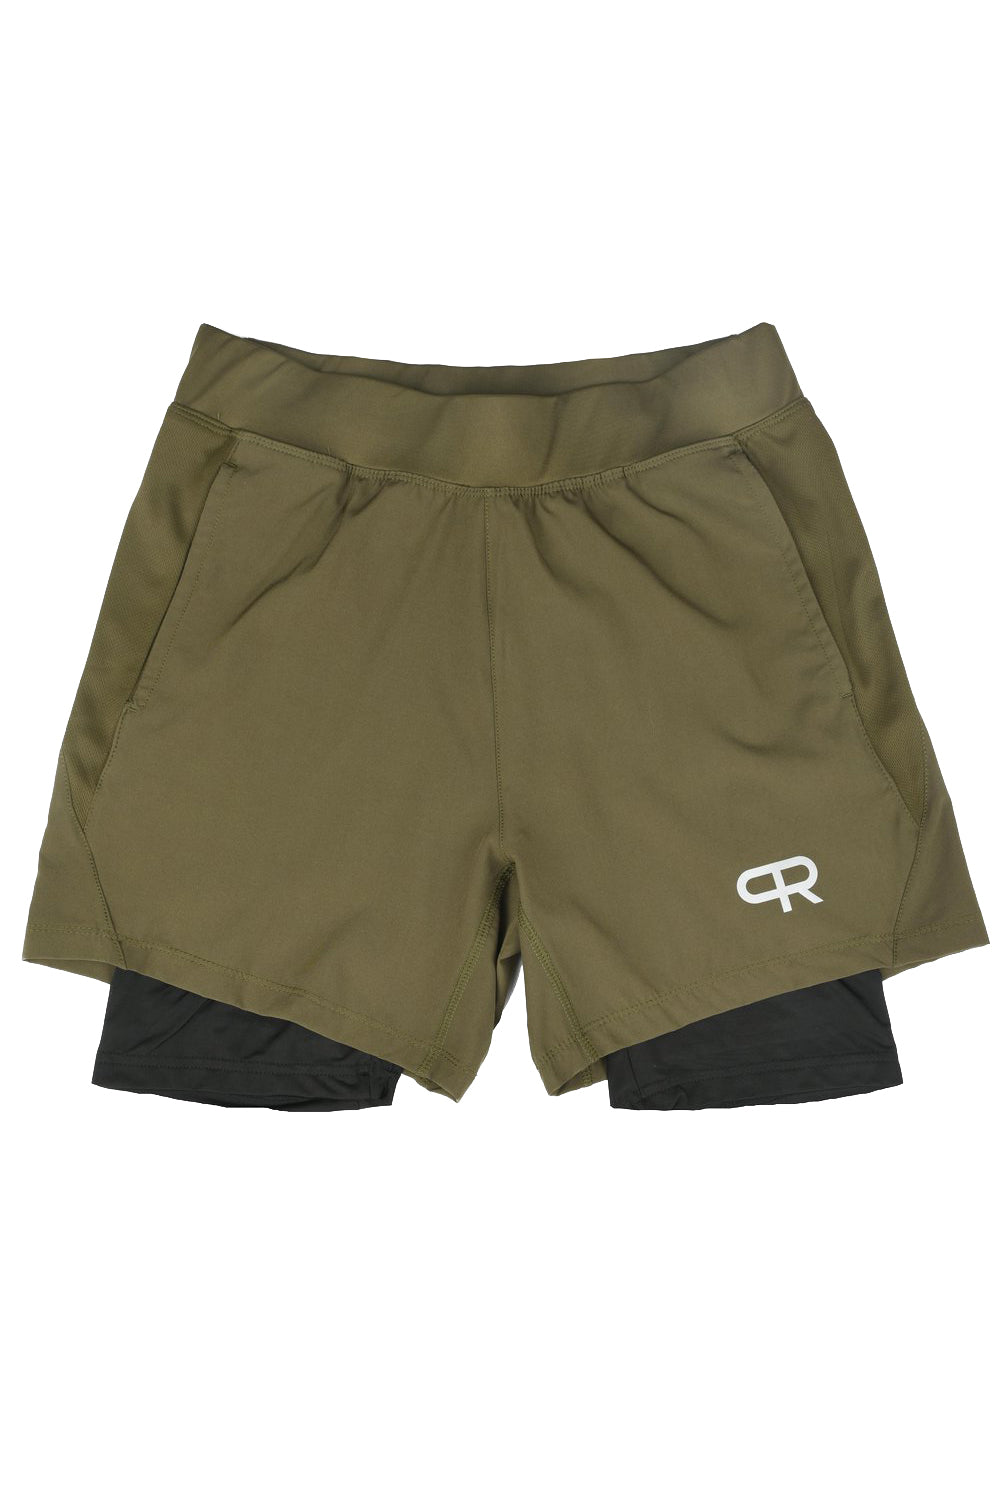 PR Compression Shorts - PR105 - Olive